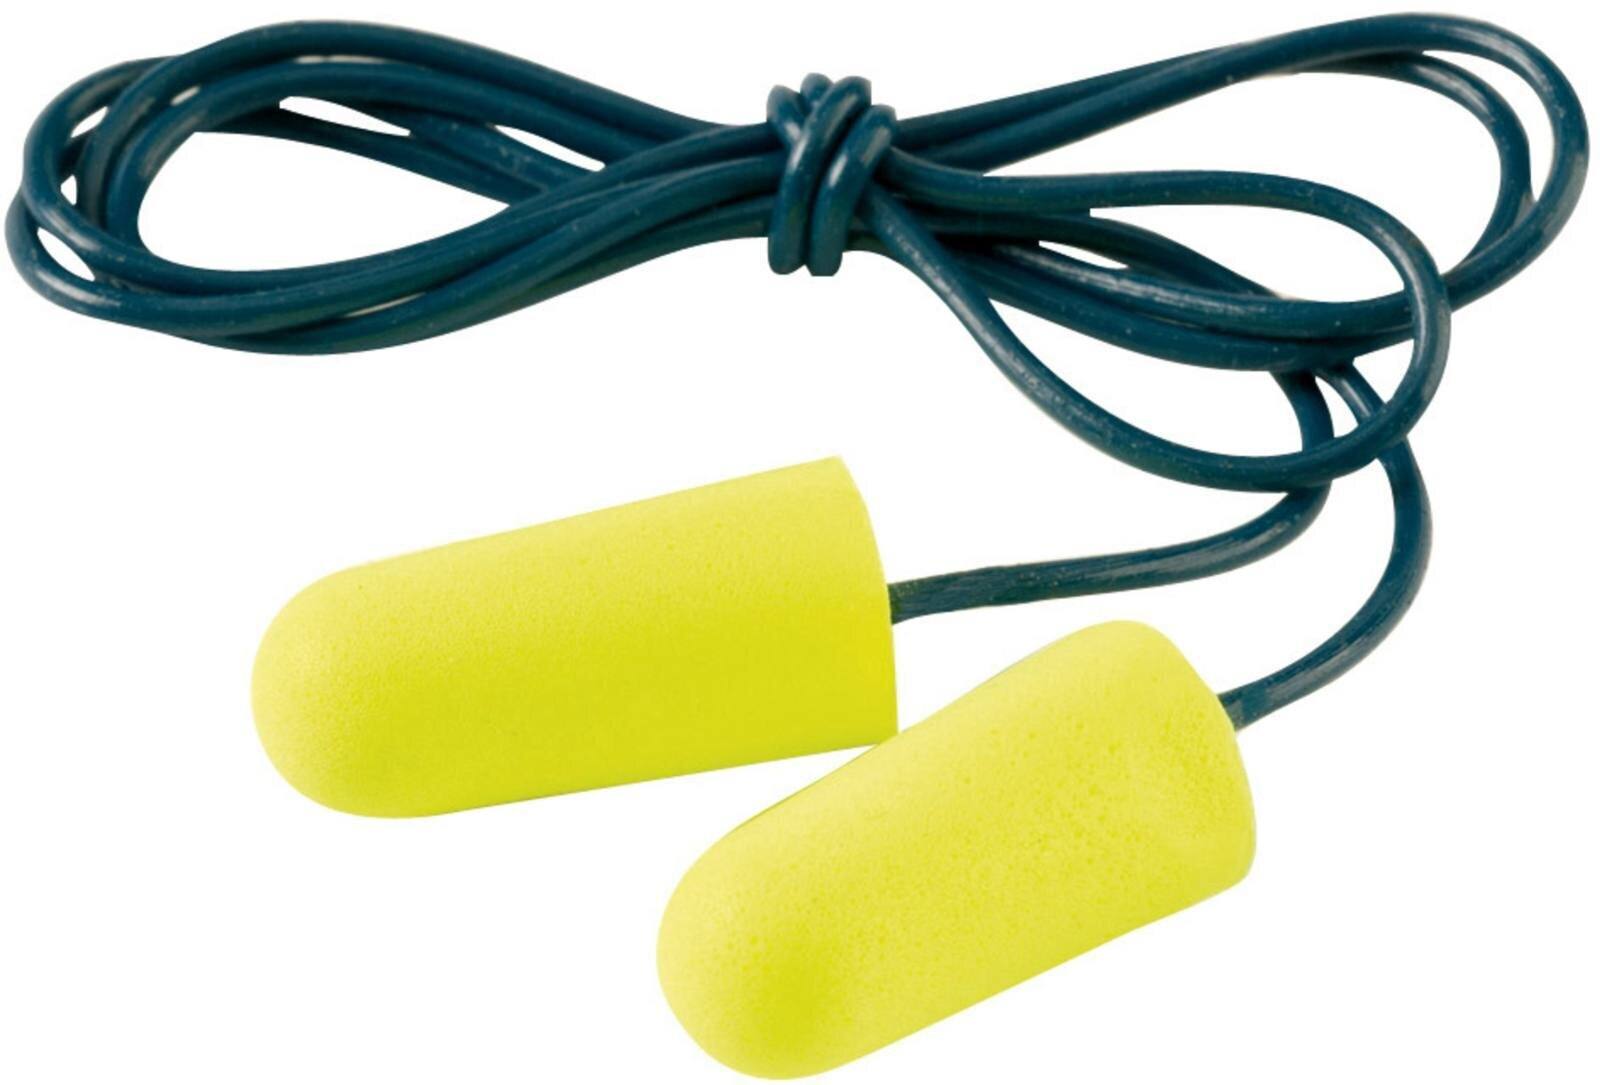 3M E-A-R Neones Amarillos Blandos, con cordón, de poliuretano, flexibles y cómodos, por pares en bolsa de plástico, amarillo neón, SNR=36 dB, ES01005